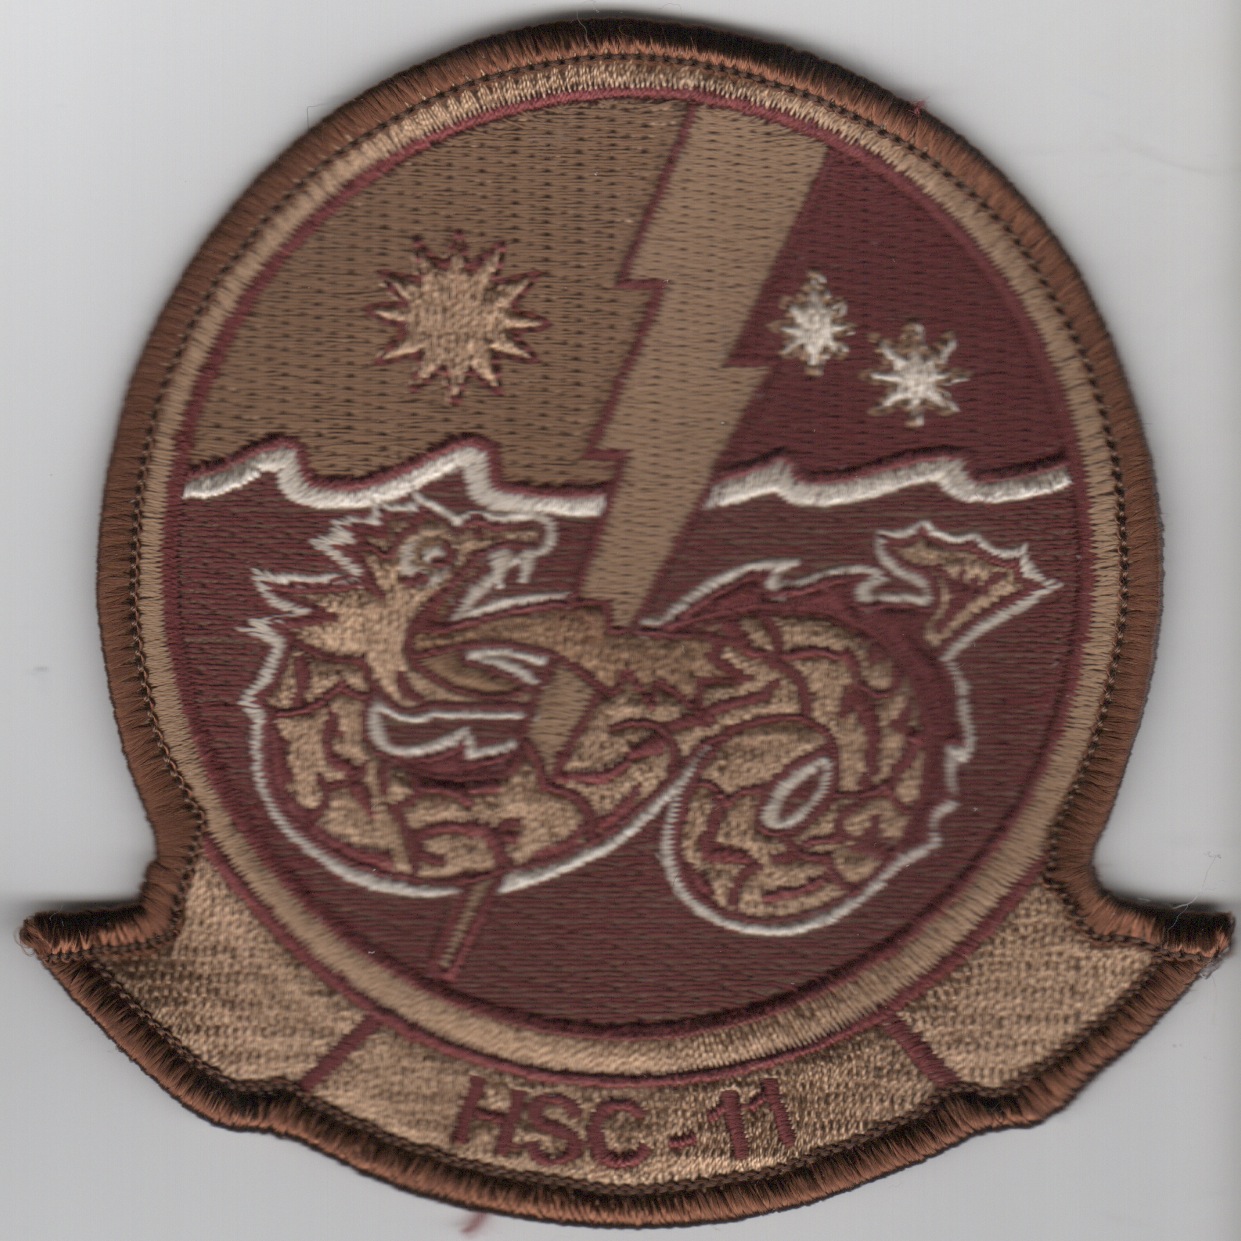 HSC-11 Squadron Patch (Des)